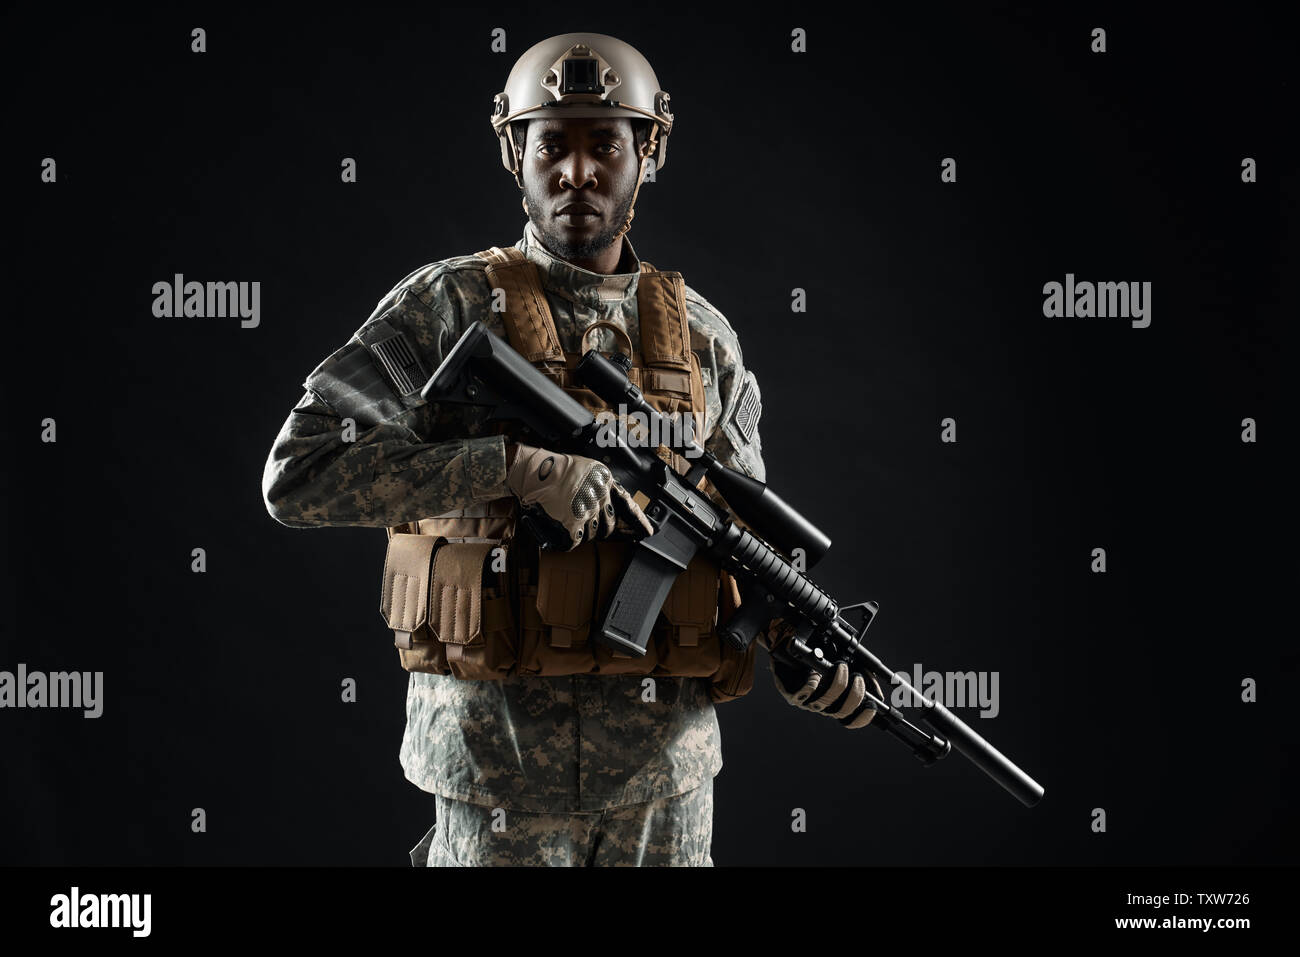 Vue avant du African soldat portant des uniformes de l'armée tenant dans les mains et d'armes à la confiance à l'appareil photo. Homme chariots de préparer la guerre. Concept de l'armée. Fond noir. Banque D'Images